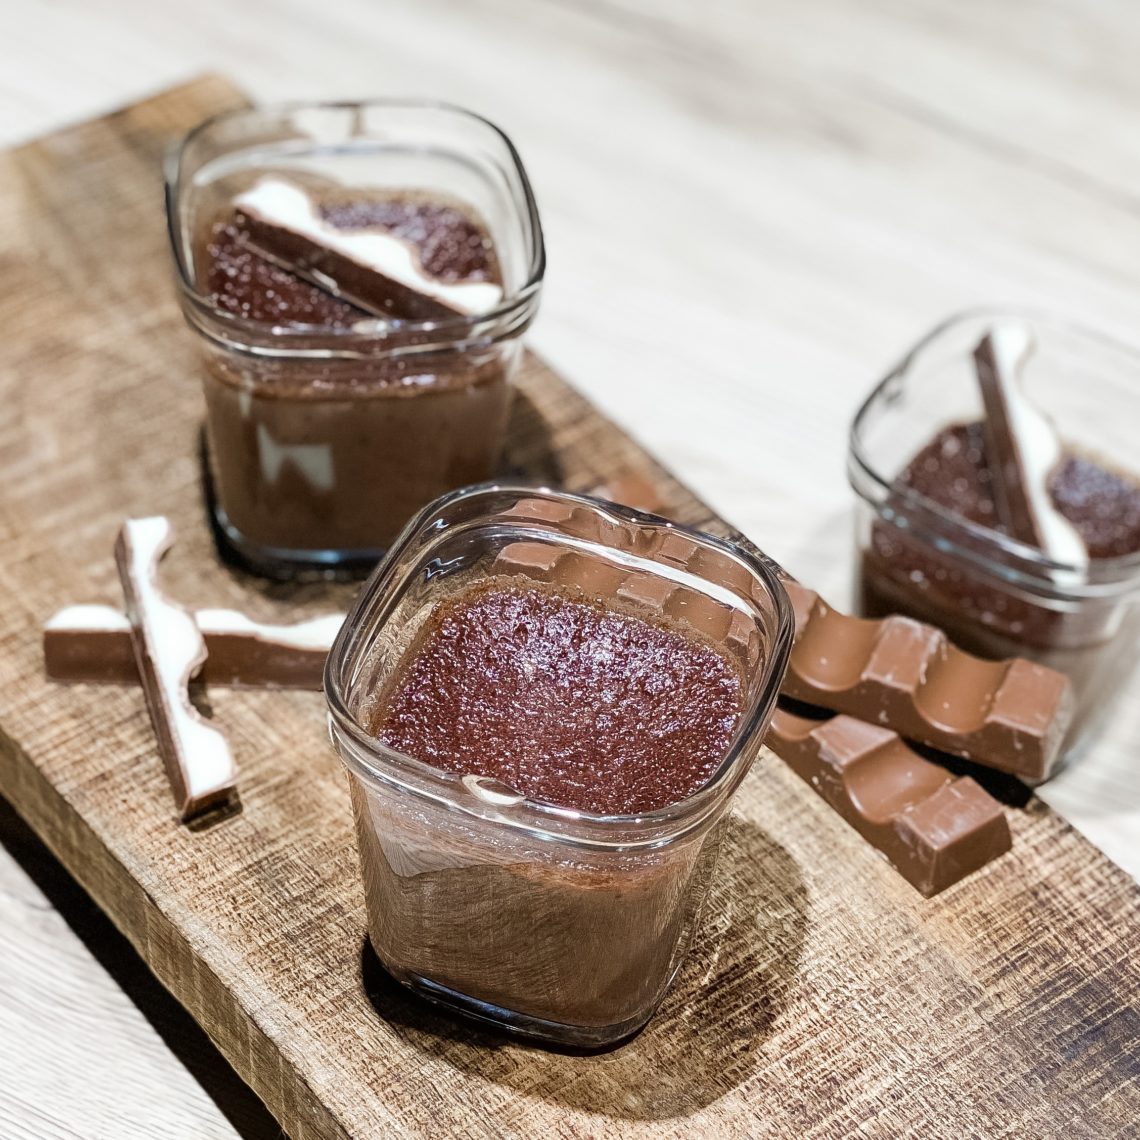  Recette de Crème chocolat Kinder - yaourtière SEB